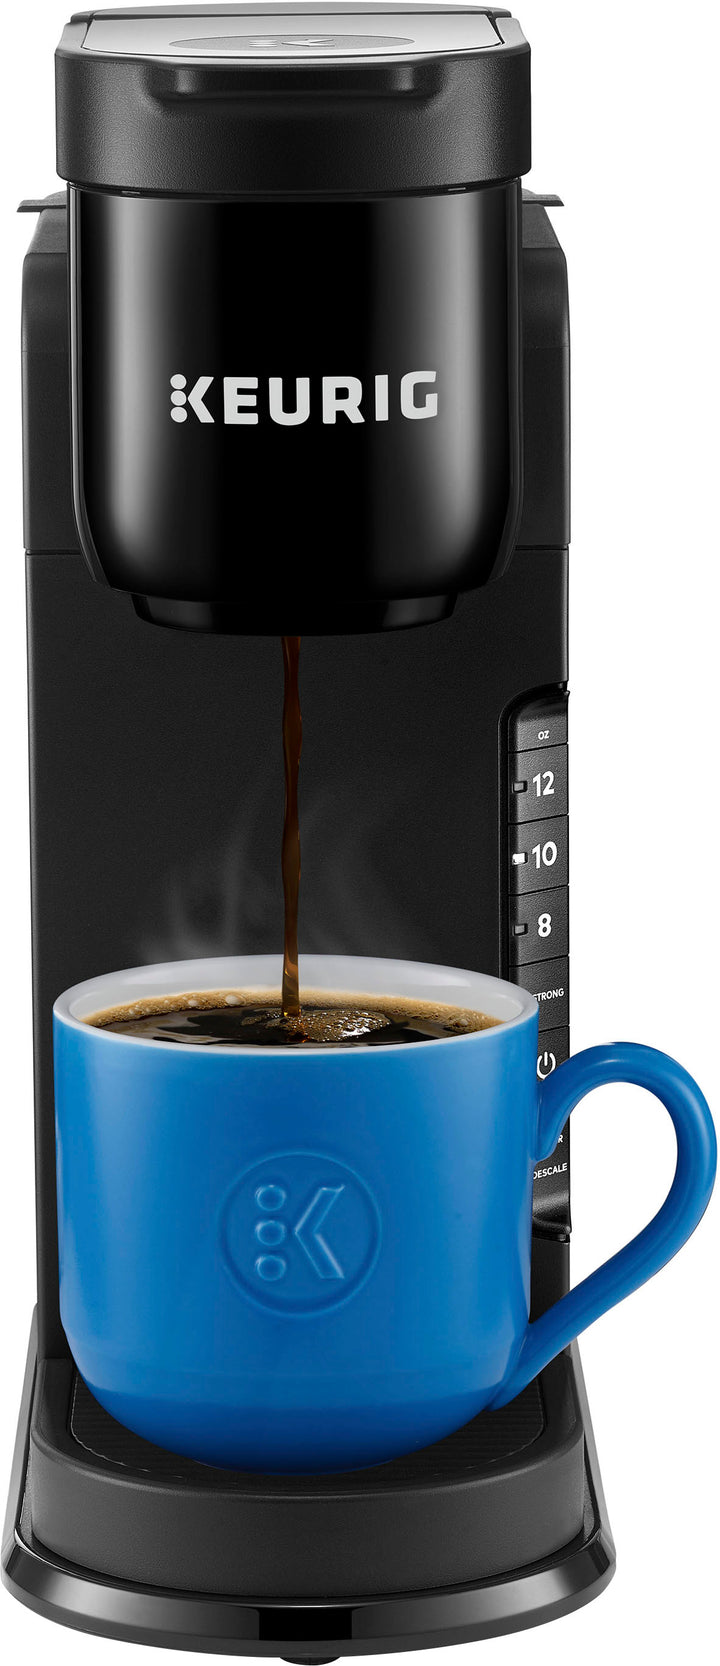 Keurig - K-Express Single Serve K-Cup Pod Coffee Maker, Black - Black_0